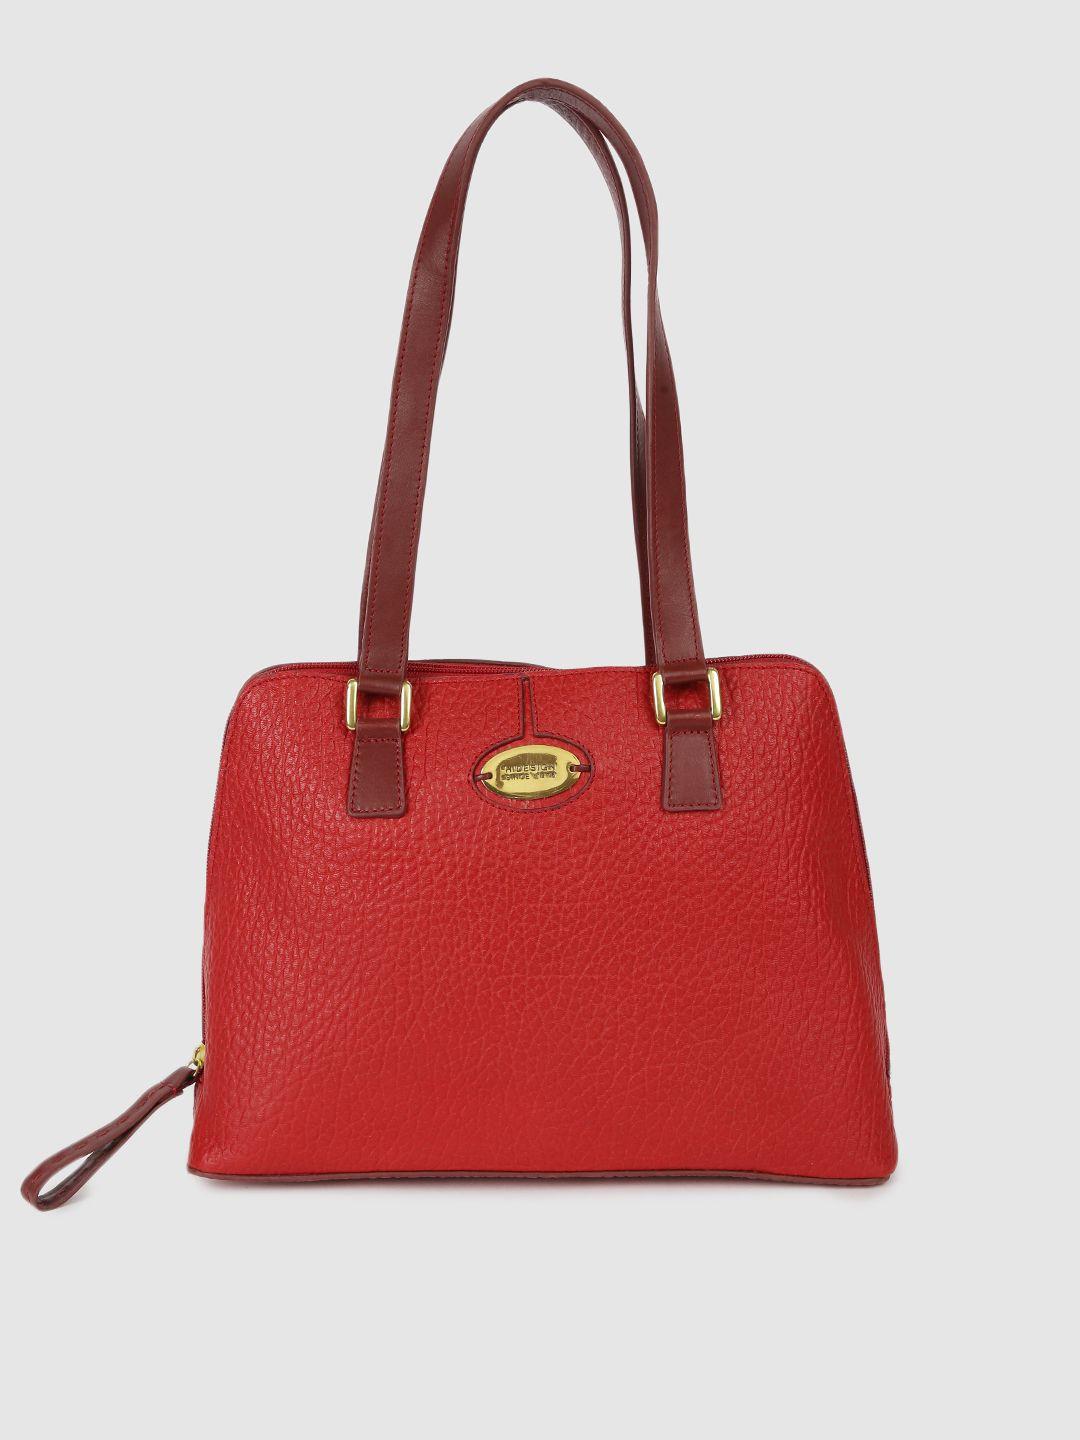 hidesign red solid leather shoulder bag